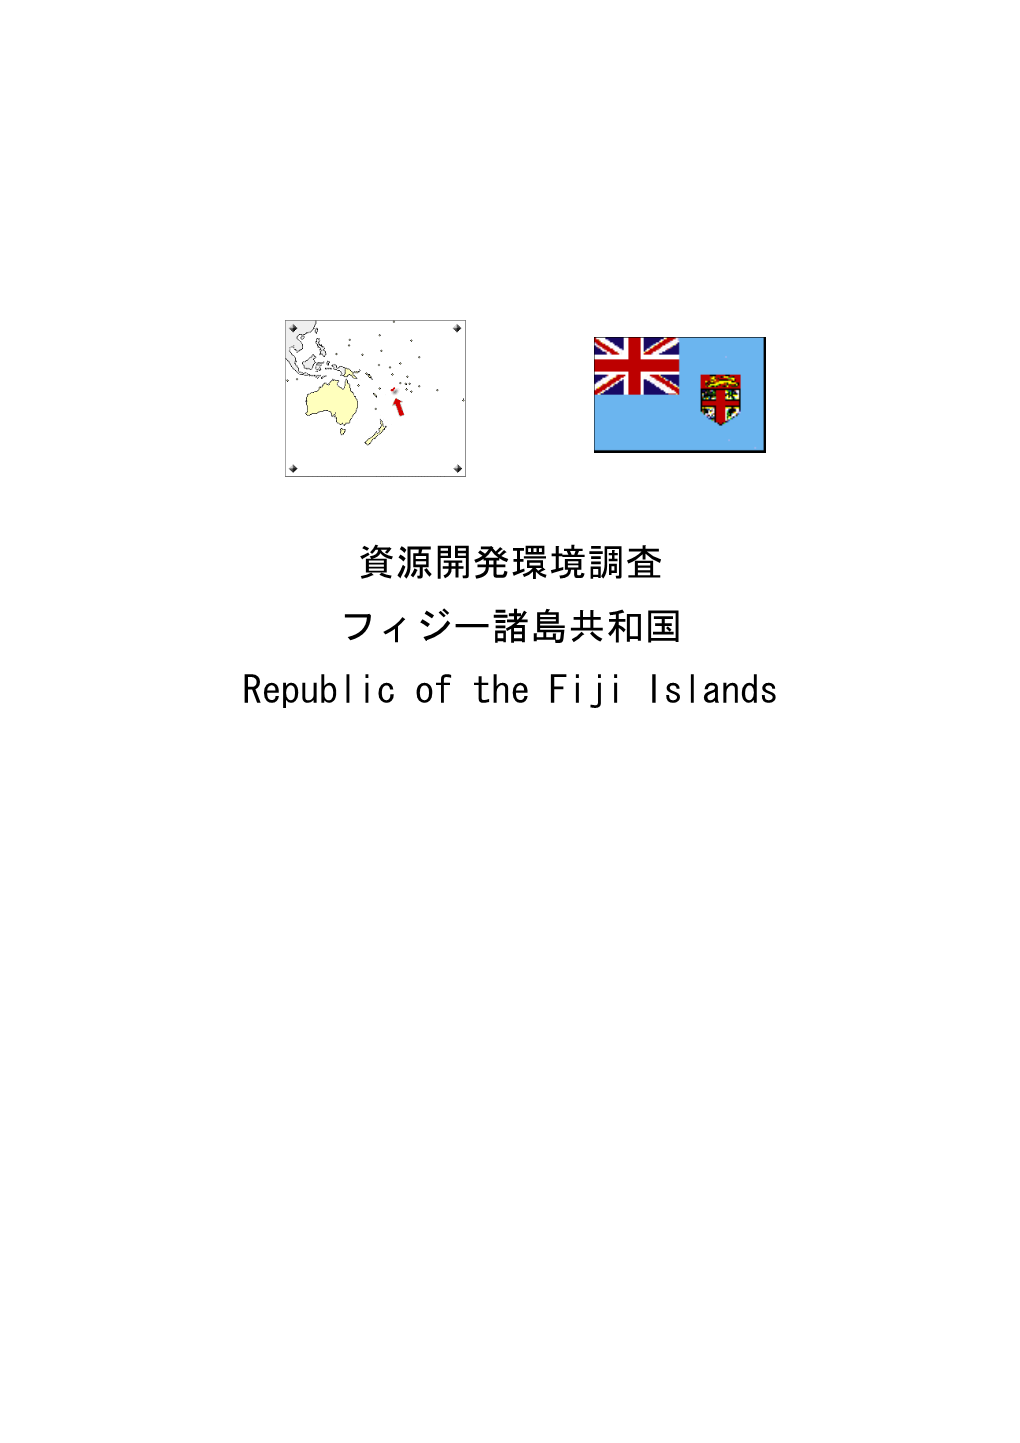 資源開発環境調査 フィジー諸島共和国 Republic of the Fiji Islands